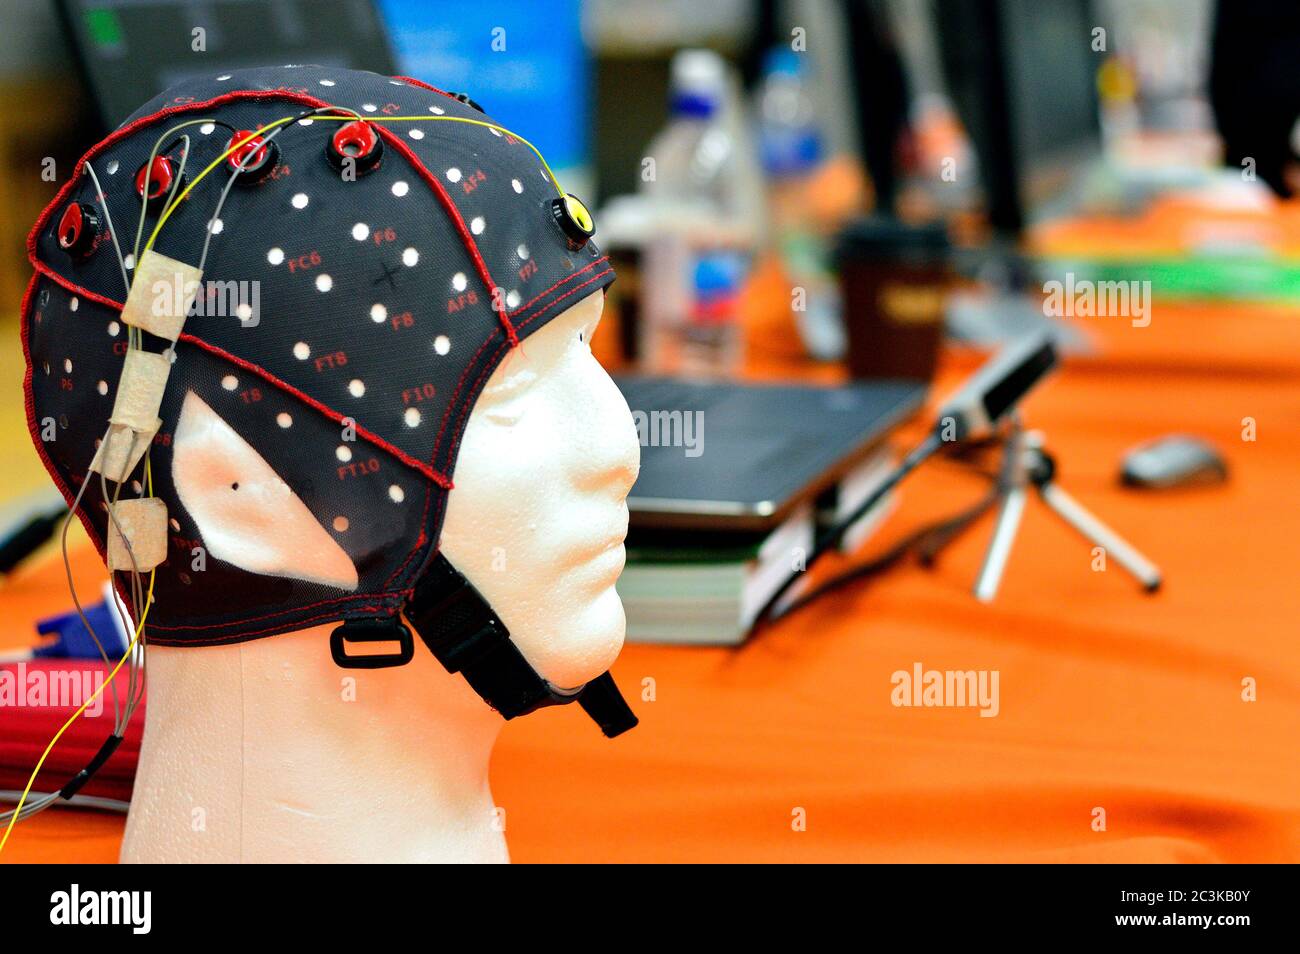 Kopfkappe mit EEG-Kopfplatte mit flachen Metallscheiben (Elektroden), die an einem Kopfmodell mit Laptop-Verwackelung im Hintergrund befestigt sind. Stockfoto